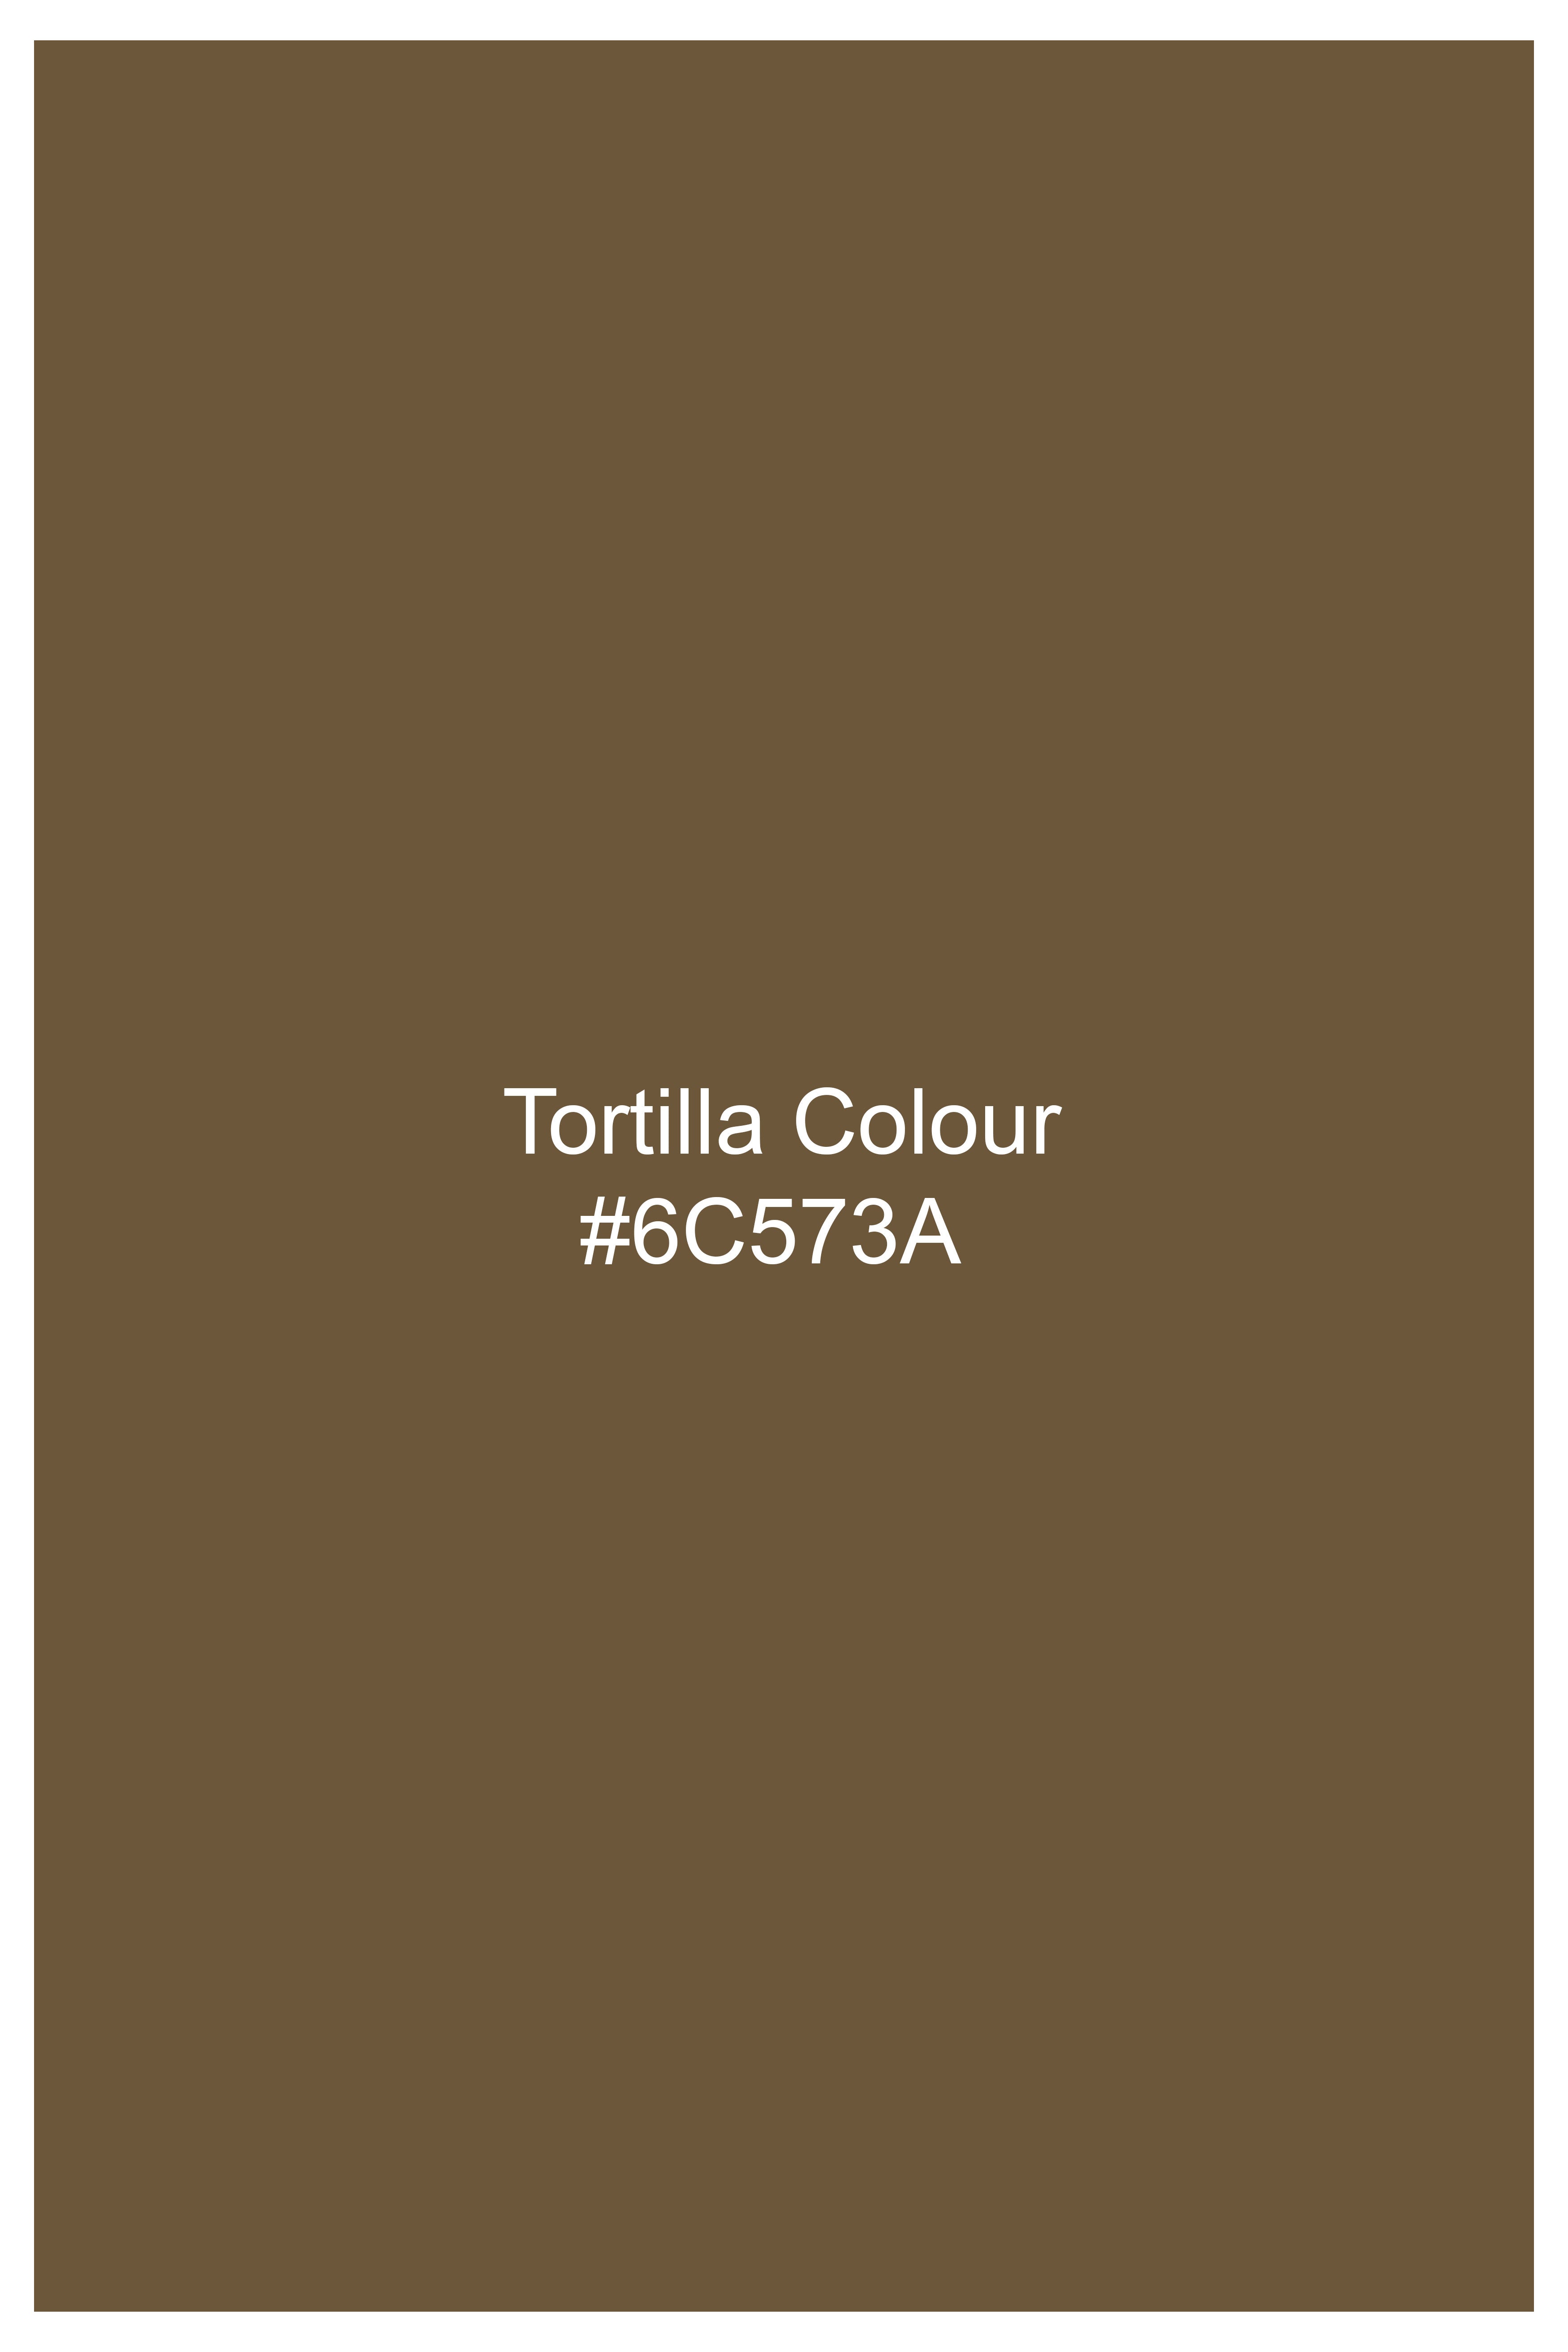 Tortilla Brown Wool Rich Waistcoat V3068-36, V3068-38, V3068-40, V3068-42, V3068-44, V3068-46, V3068-48, V3068-50, V3068-68, V3068-54, V3068-56, V3068-58, V3068-60